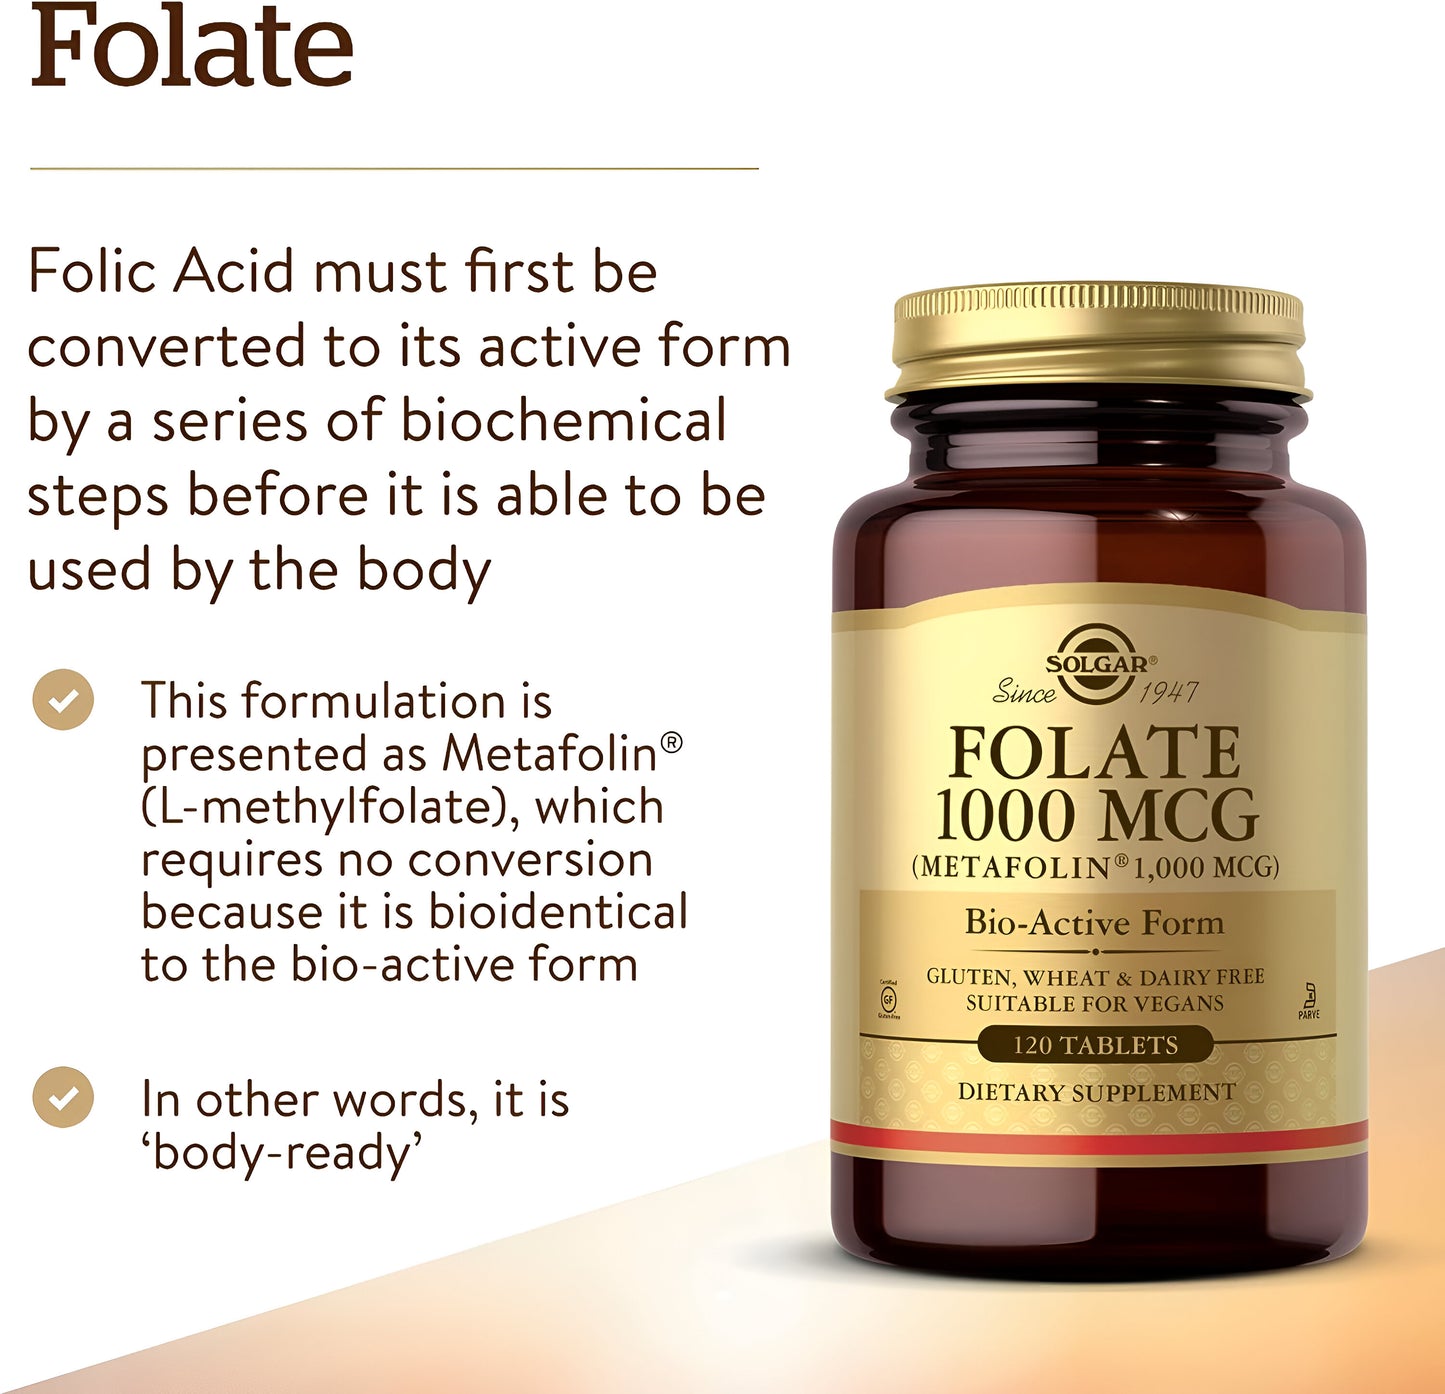 Solgar Folate 1000 mcg (Metafolin) 120 tabletas